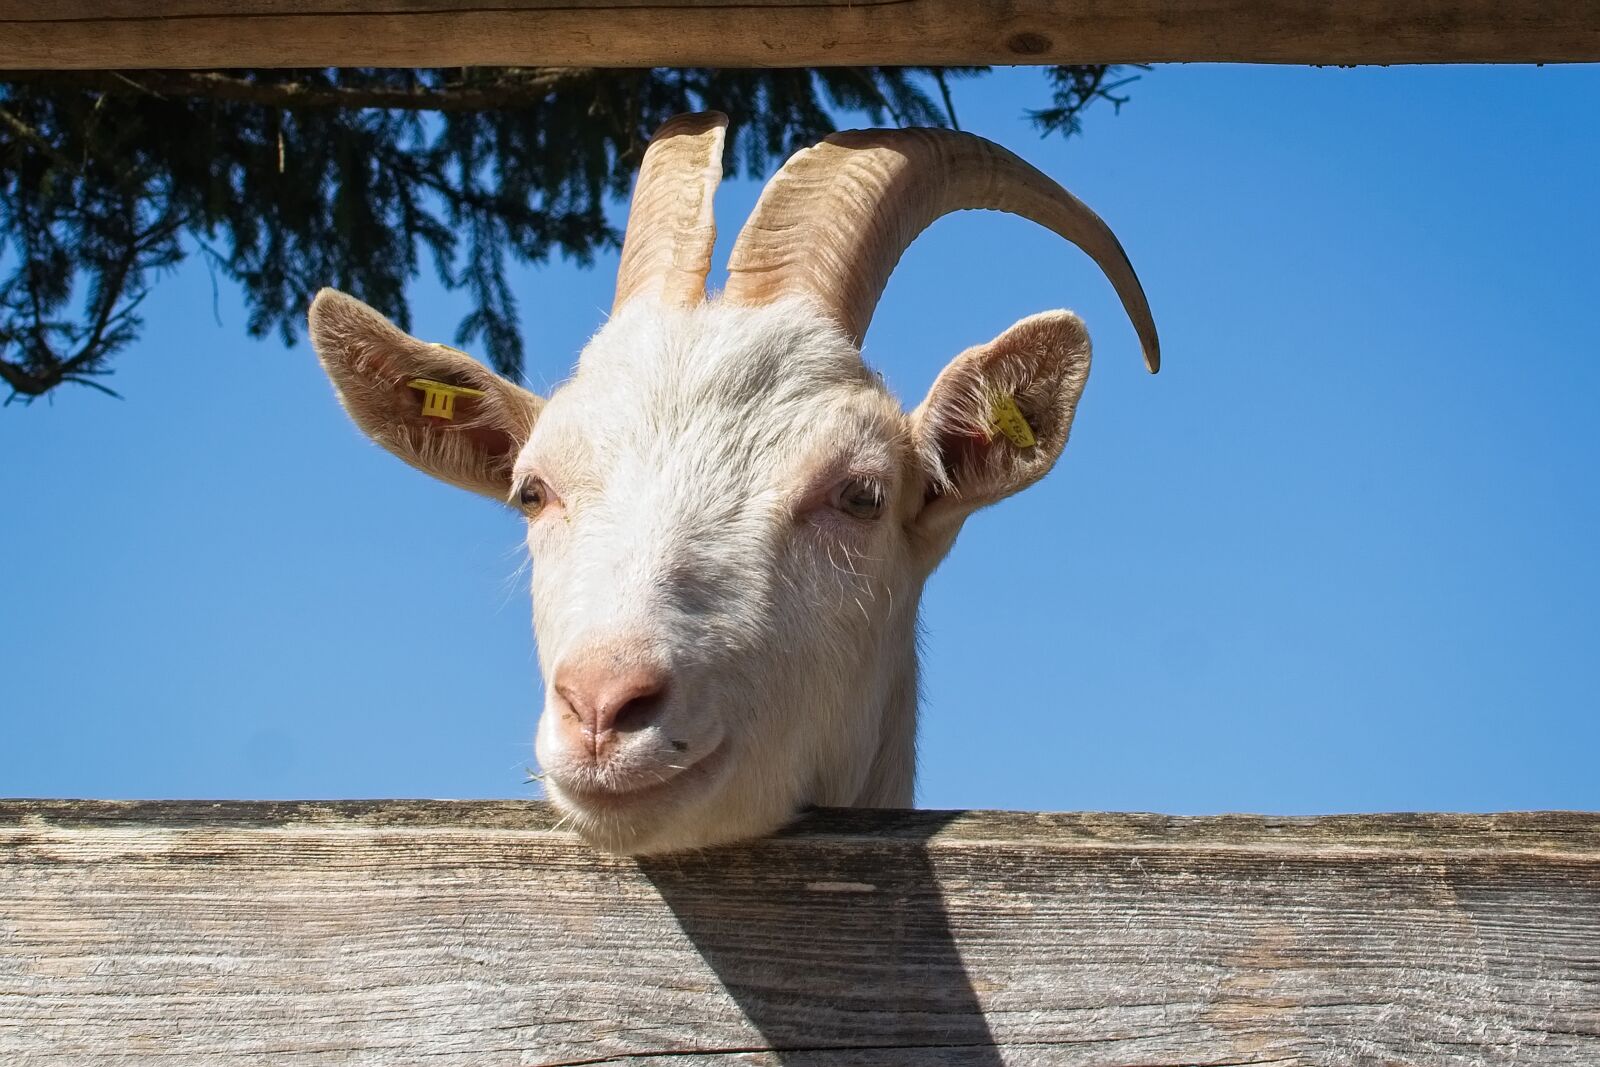 Nikon AF-S DX Nikkor 35mm F1.8G sample photo. Domestic goat, goat, head photography